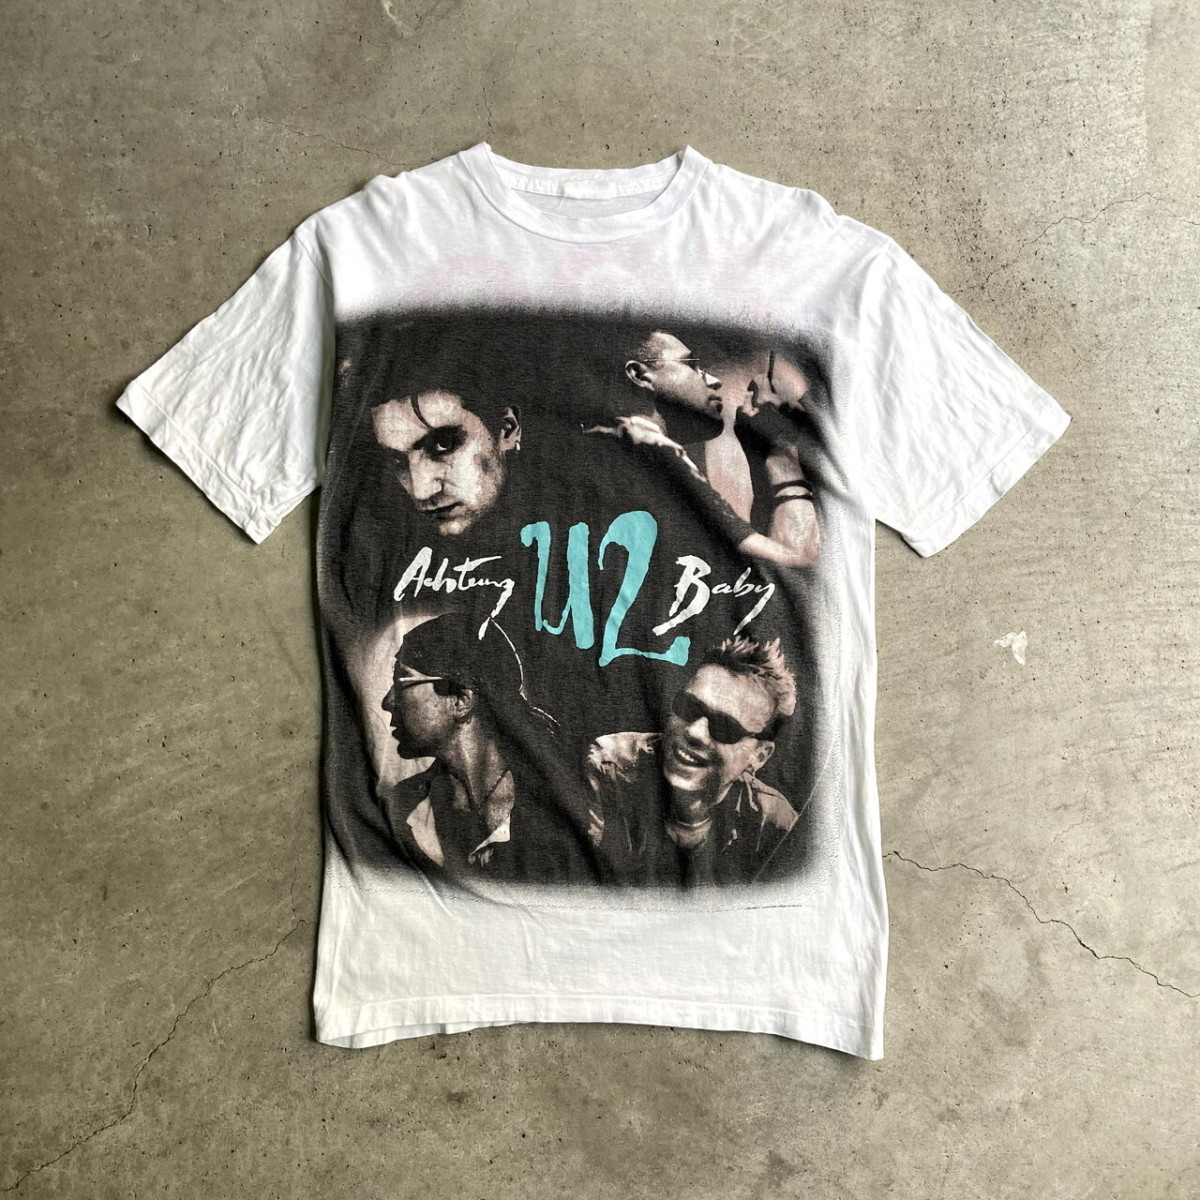 出産祝い  U2 90年代 Achtung メンズM相当 バンドTシャツ TOUR TV ZOO Baby イラスト、キャラクター